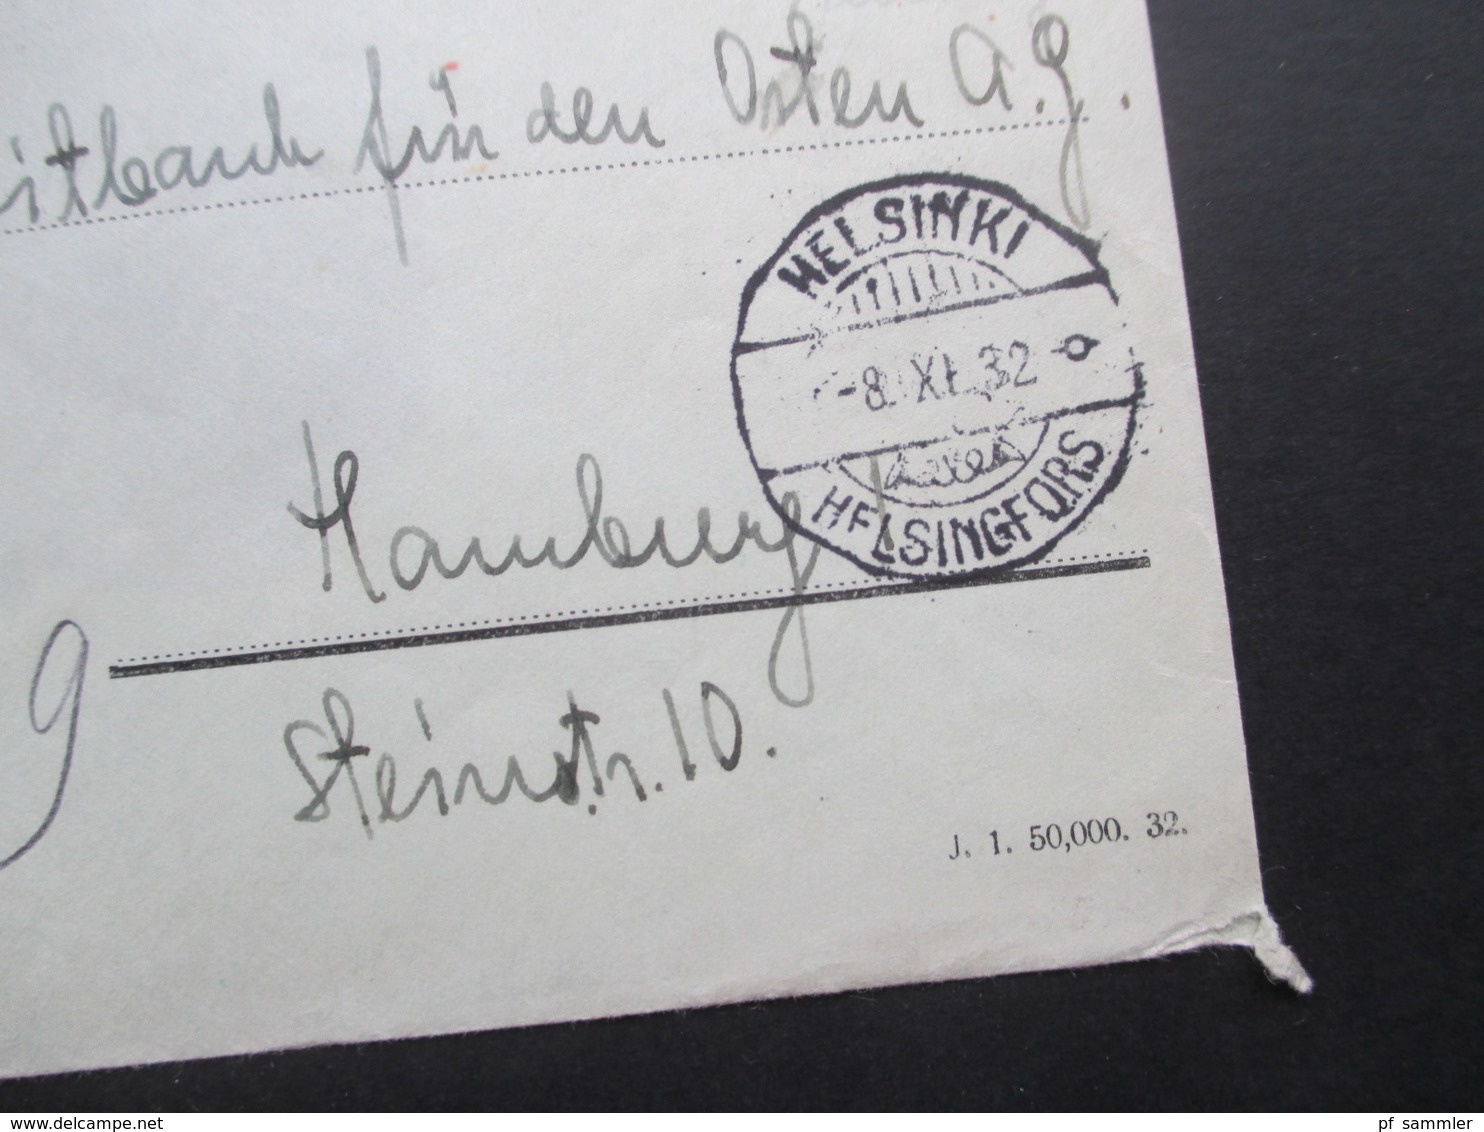 Finnland 1932 Freistempel Einschreiben Helsinki Helsingfors Nach Hamburg Mit Ak Stempel Hamburg 1 Einschreibzustellung - Covers & Documents